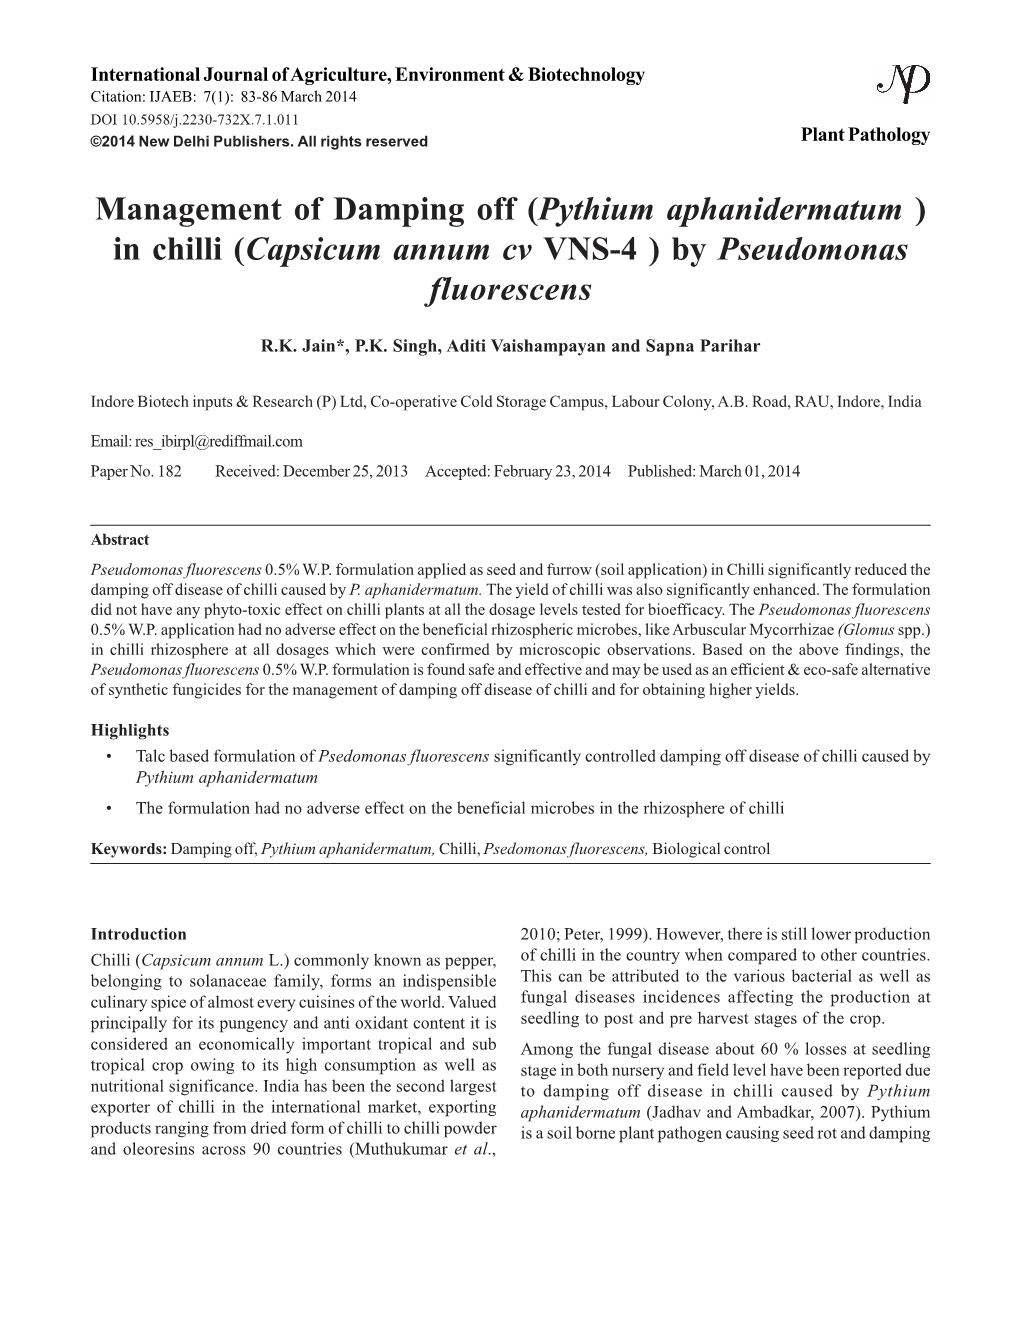 Management of Damping Off (Pythium Aphanidermatum ) in Chilli (Capsicum Annum Cv VNS-4 ) by Pseudomonas Fluorescens